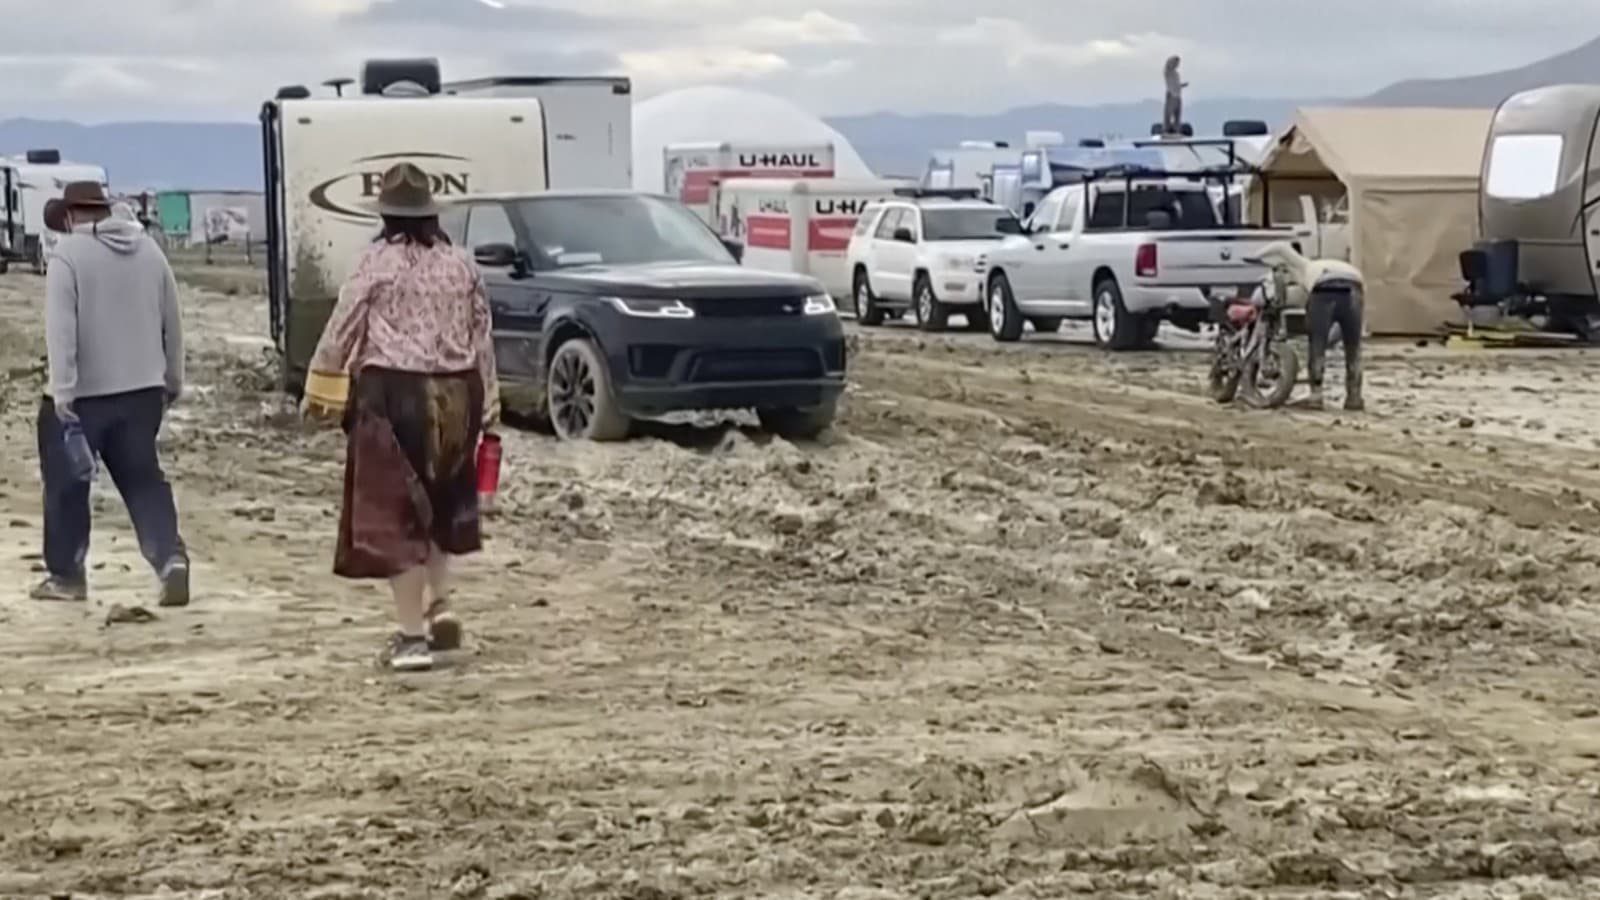 Účastníci festivalu Burning Man